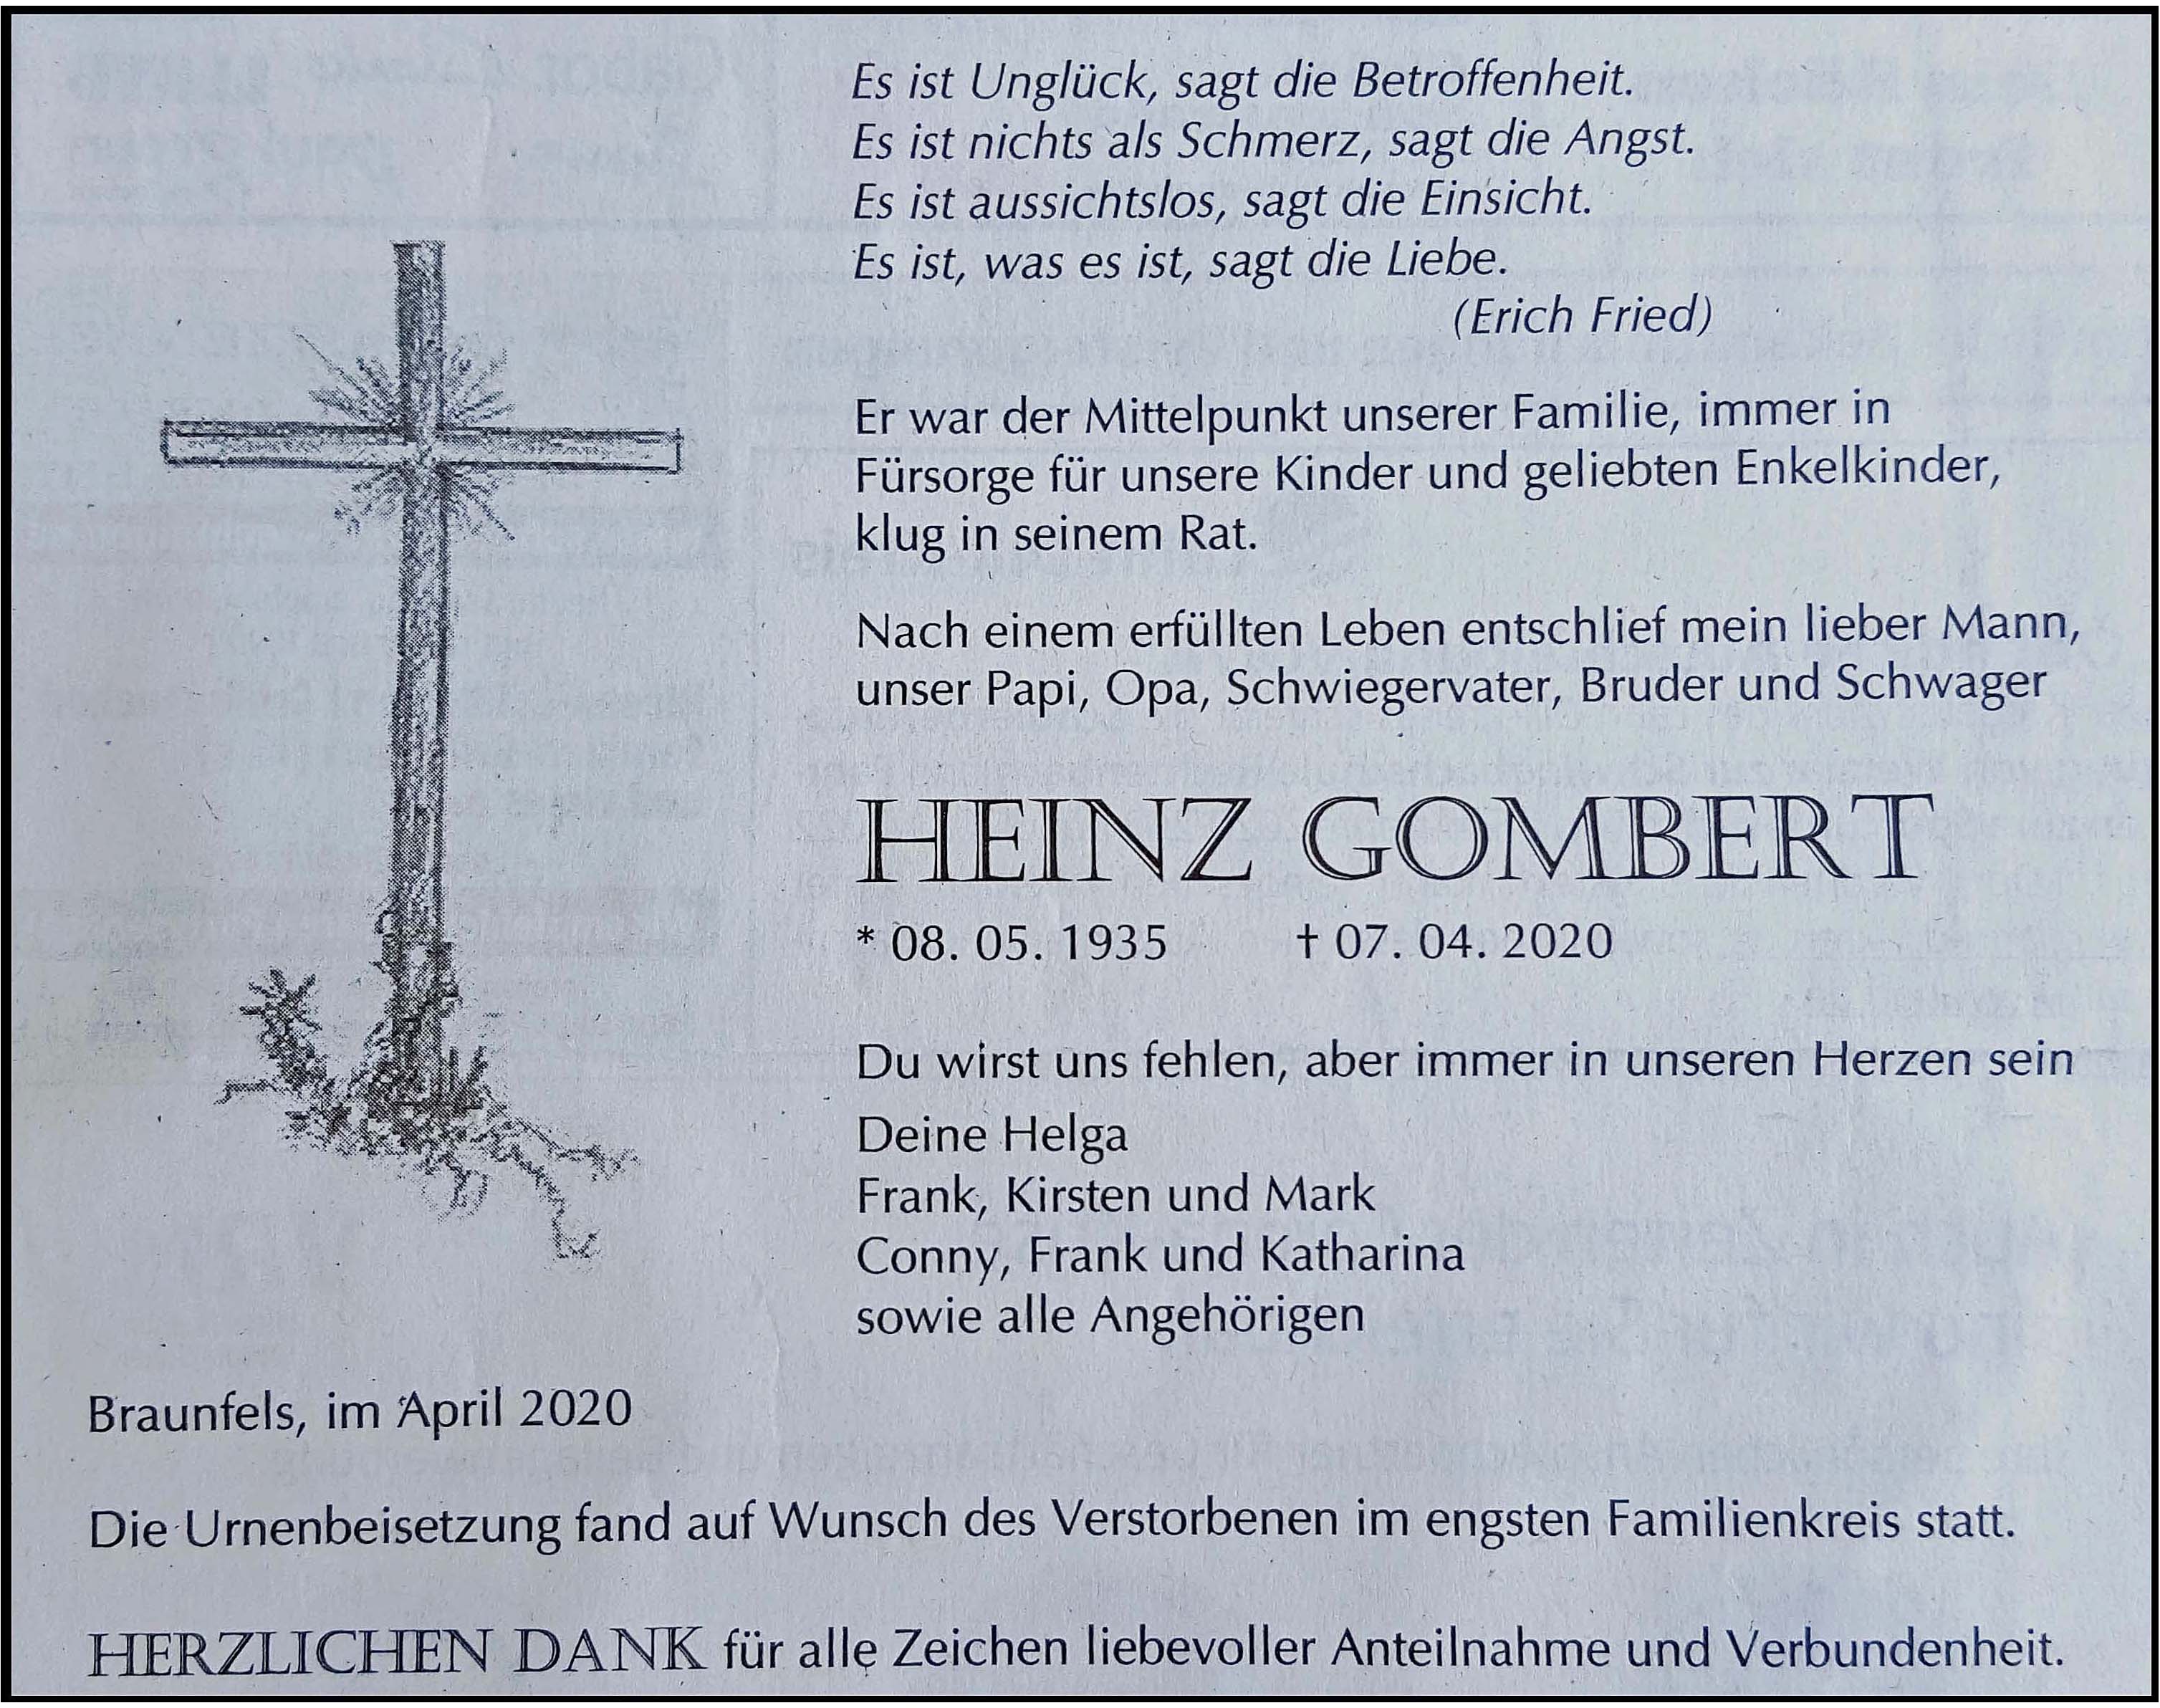 Heinz Gombert 2020 Todesanzeige 2020 WEB